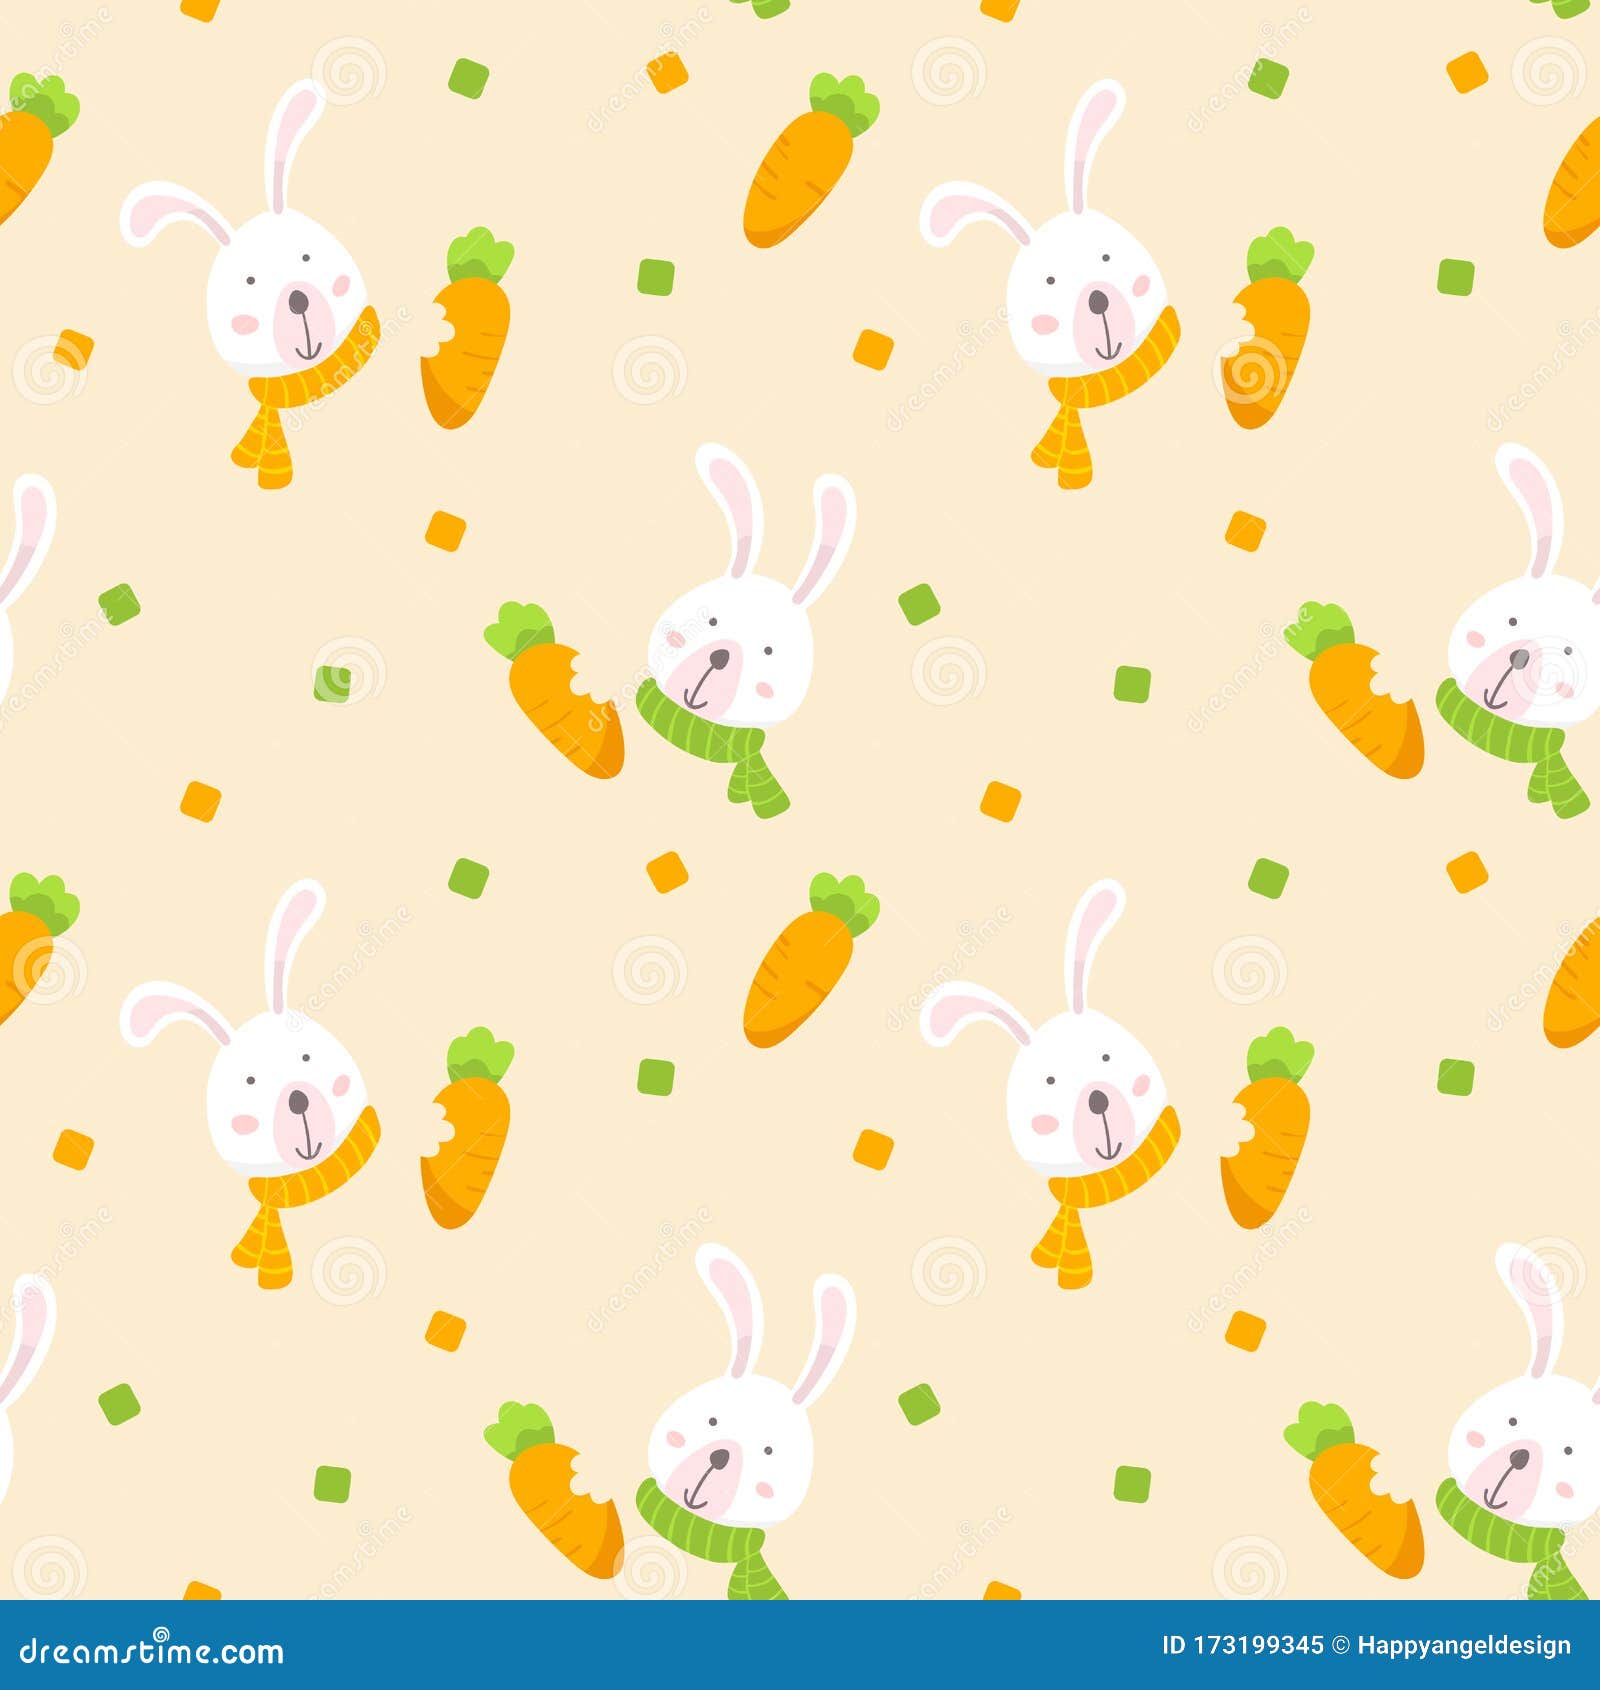 Escritorio Hd Cute Bunny Rabbit Cartoon fotos For Phones with Cute Fondos  de pantallas por Arabela6  Imágenes españoles imágenes